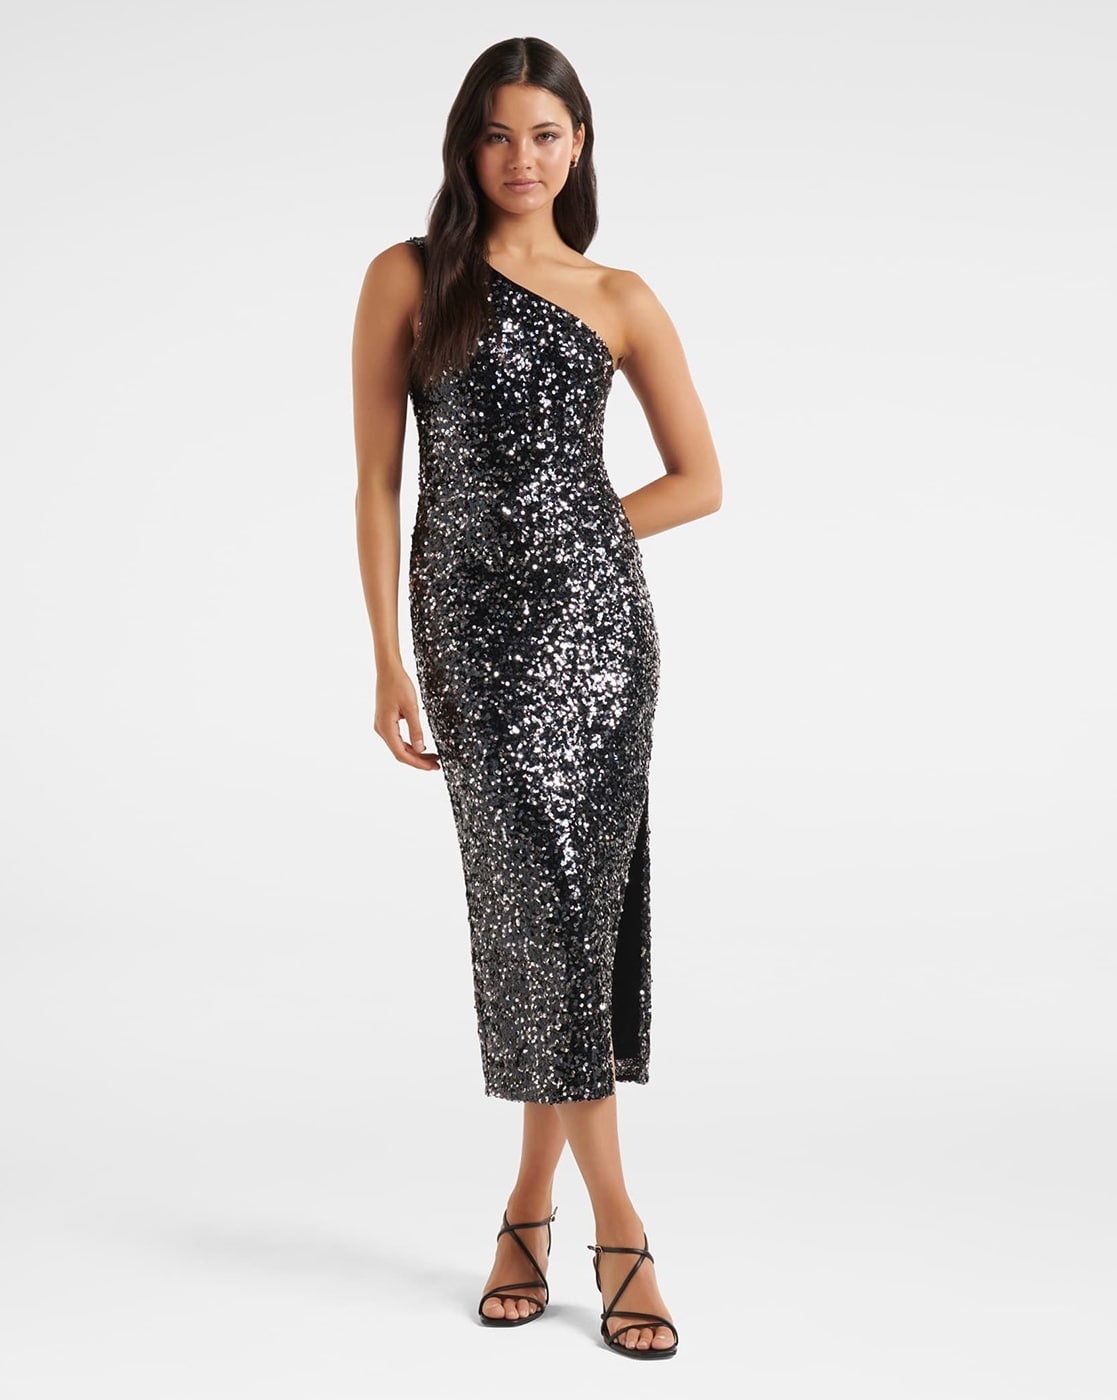 Women's Sparkly & Glitter Dresses